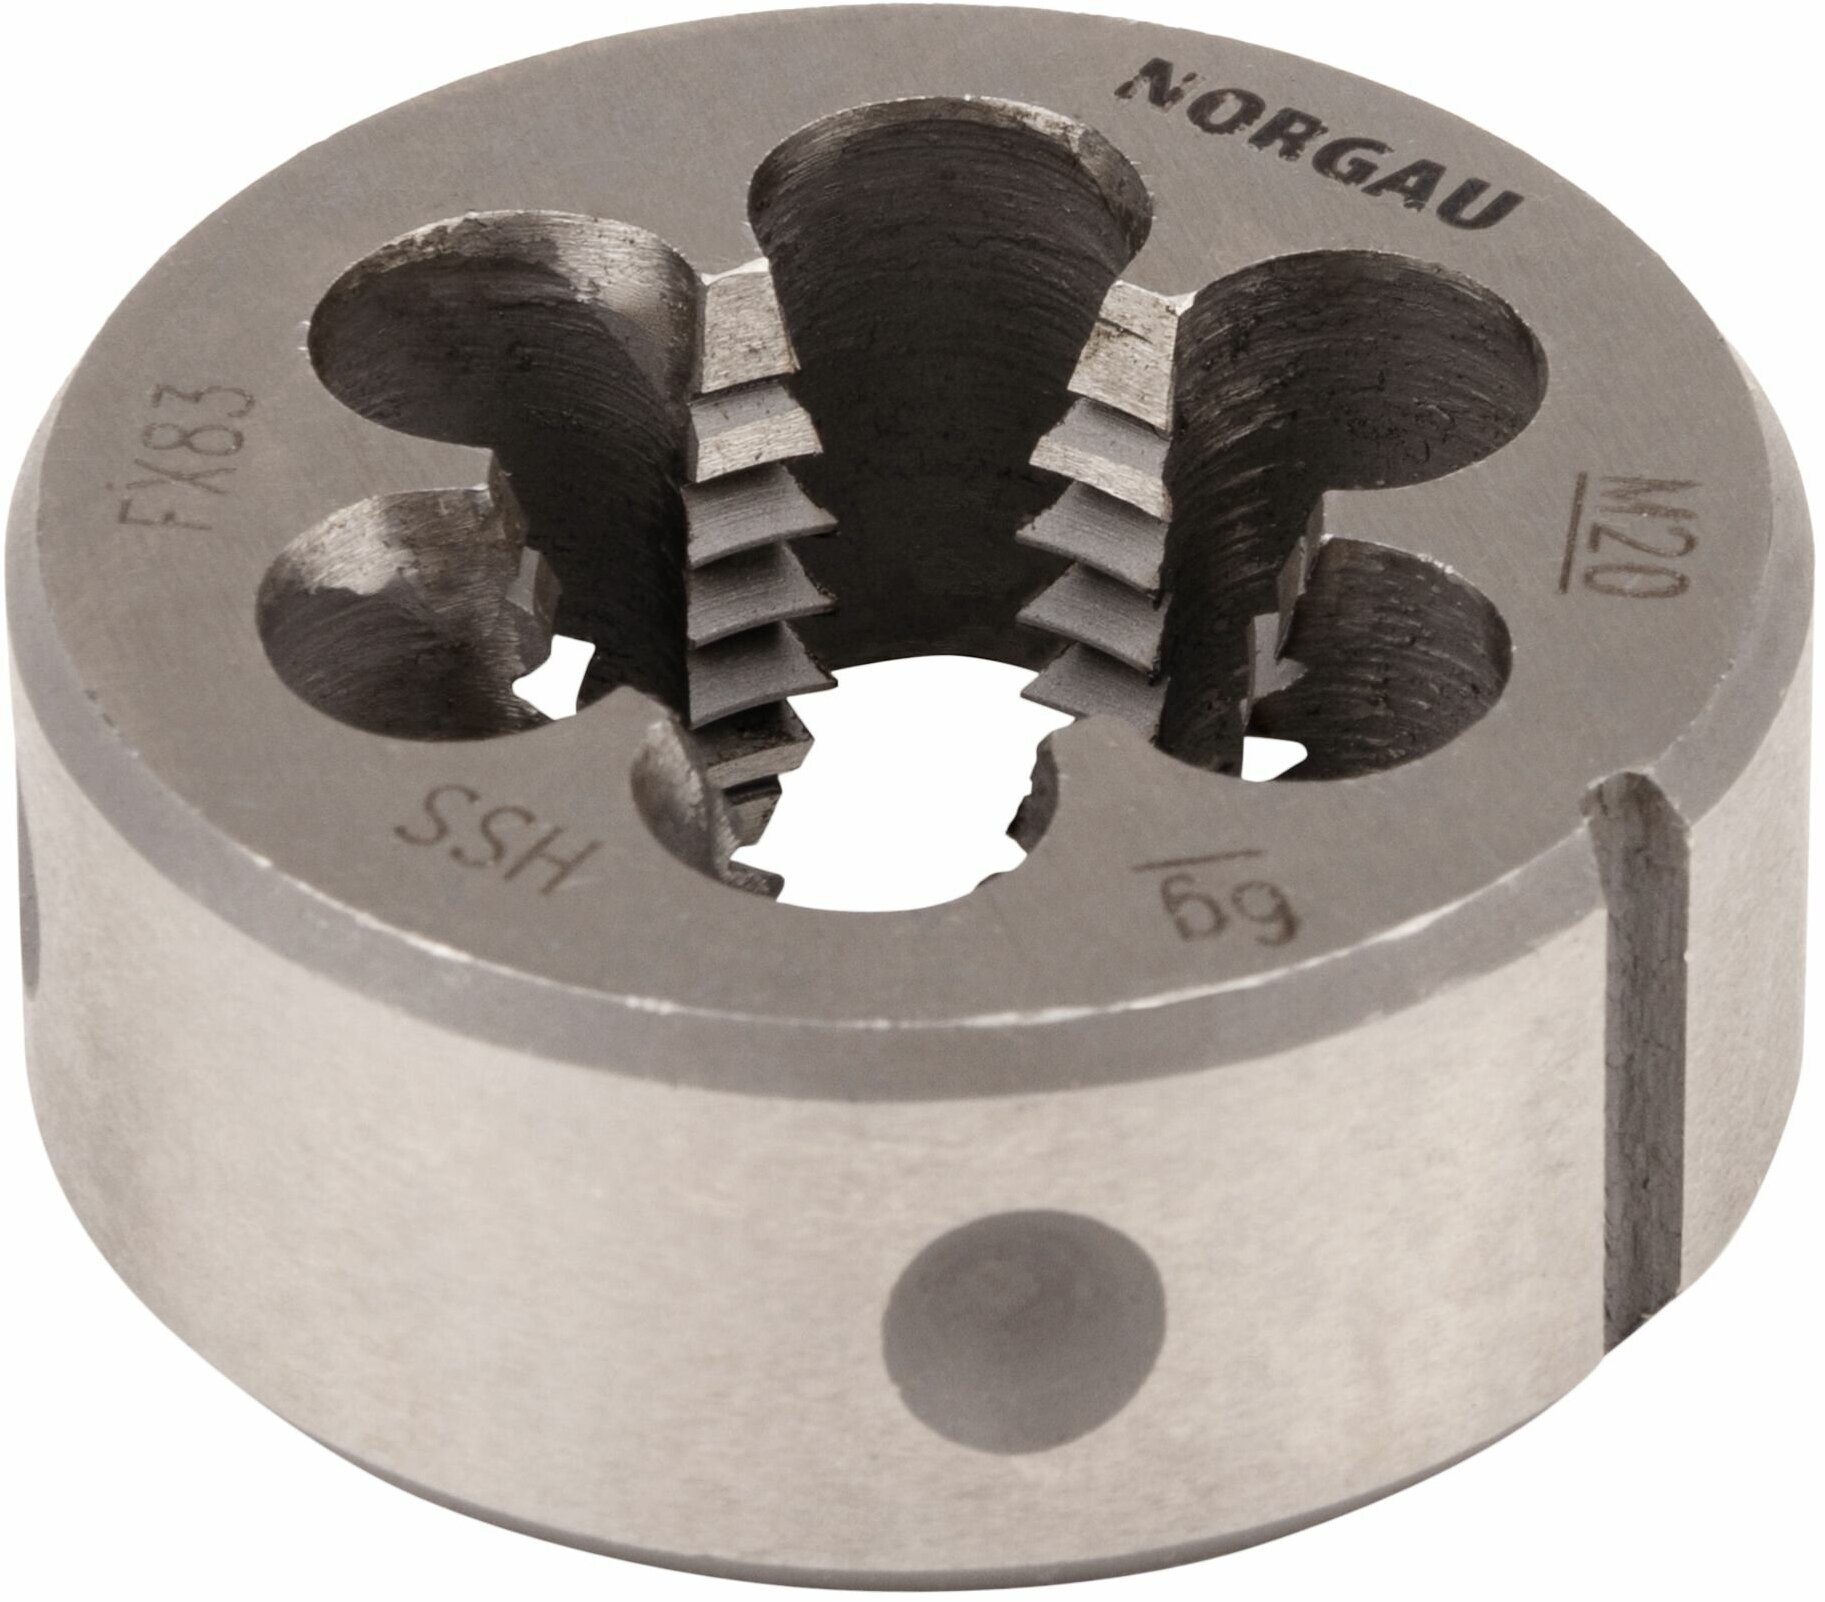 Плашка М20х2.5 мм с поднутрением NORGAU Industrial метрическая для нарезания резьбы с крупным углом профиля 60 по DIN223 HSS диаметр 45 мм